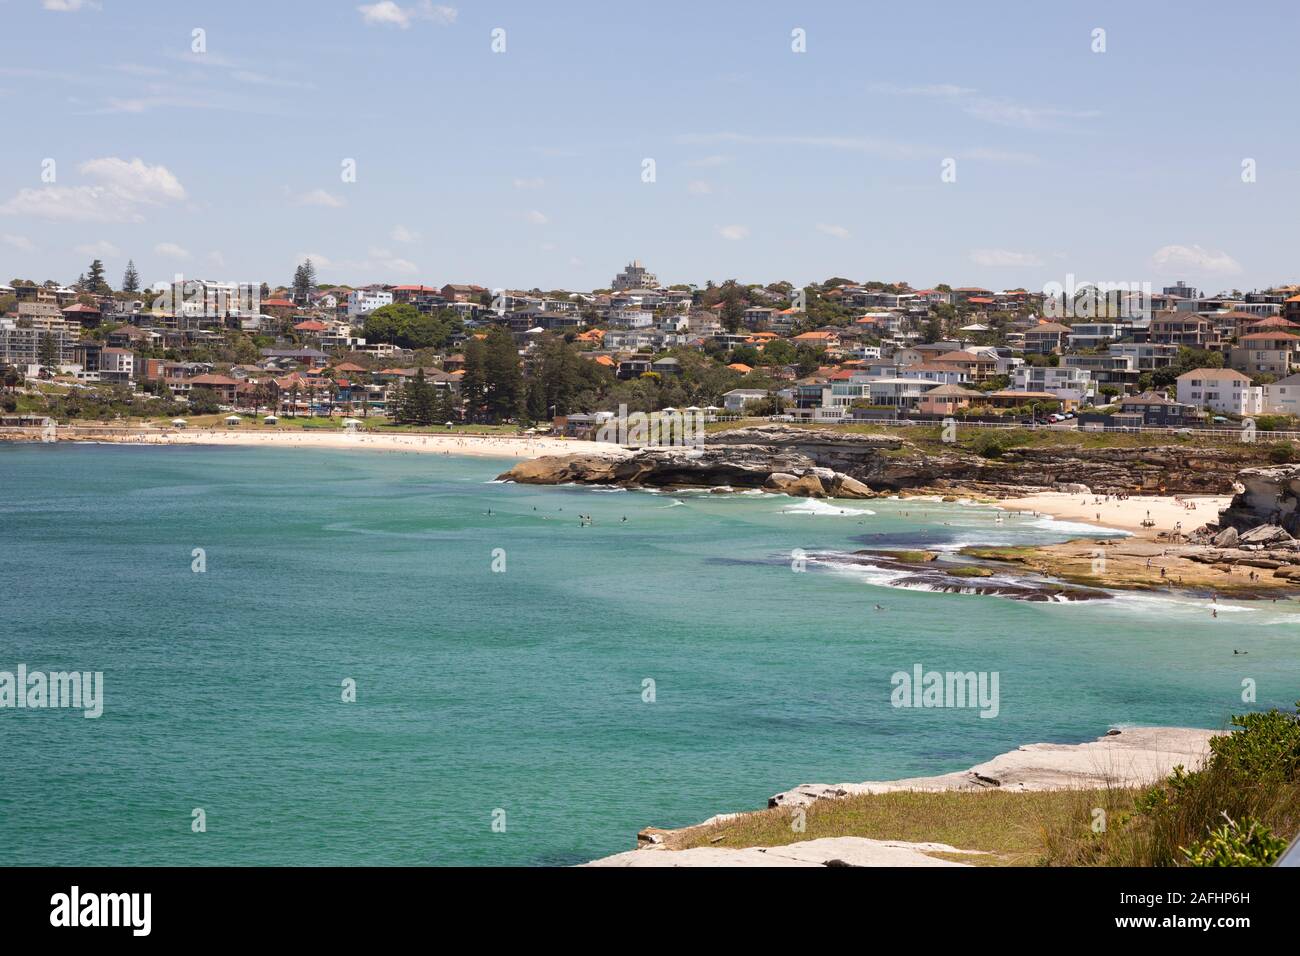 Sydney Bondi nach Bronte Ocean Walk; Landschaftsansicht der Strände Tamarama und Bronte, Sydney New South Wales Australien Stockfoto